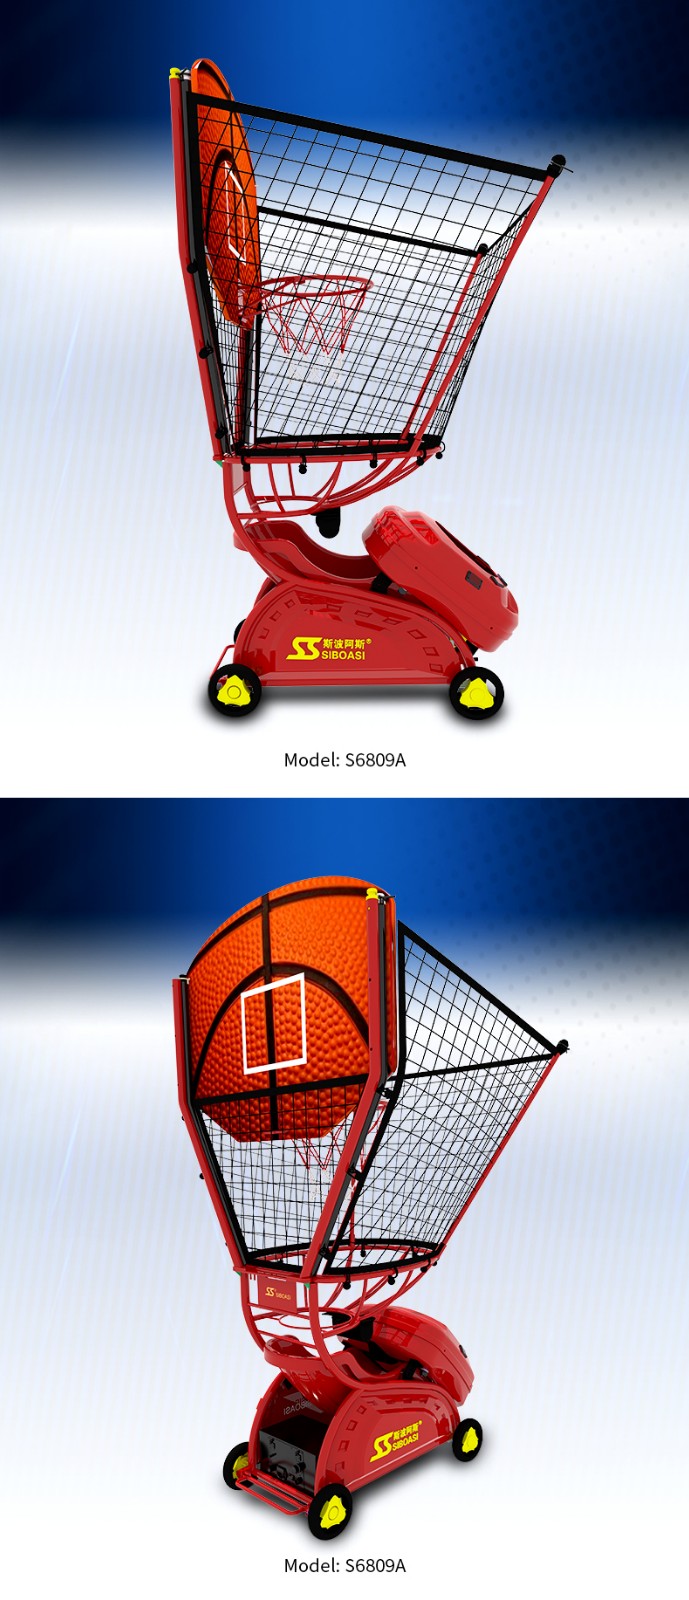 máquina de baloncesto para niños